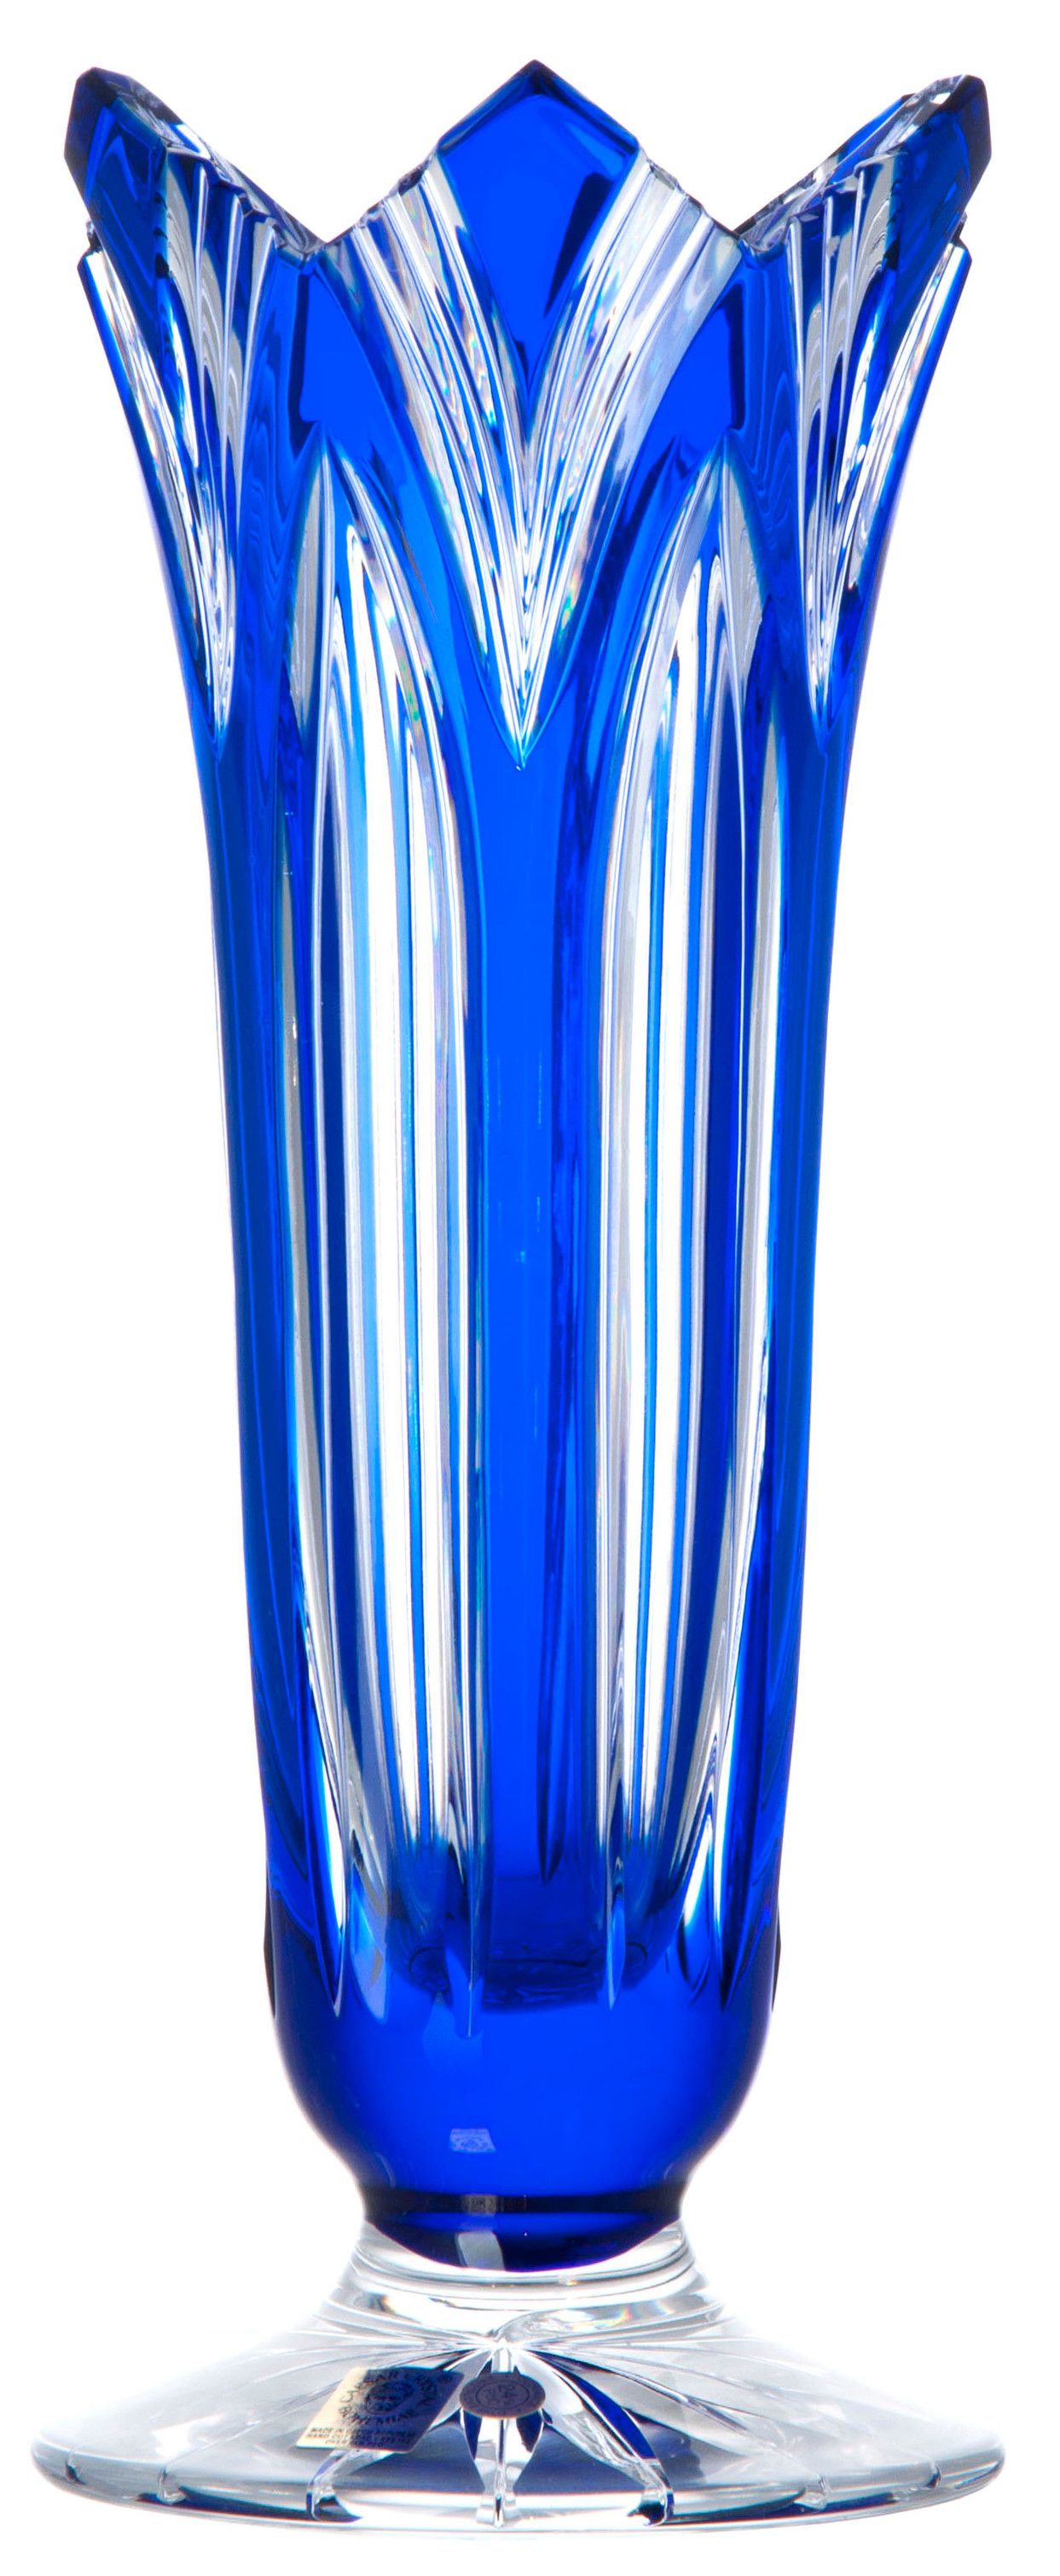 Krištáľová váza Lotos, farba modrá, výška 280 mm